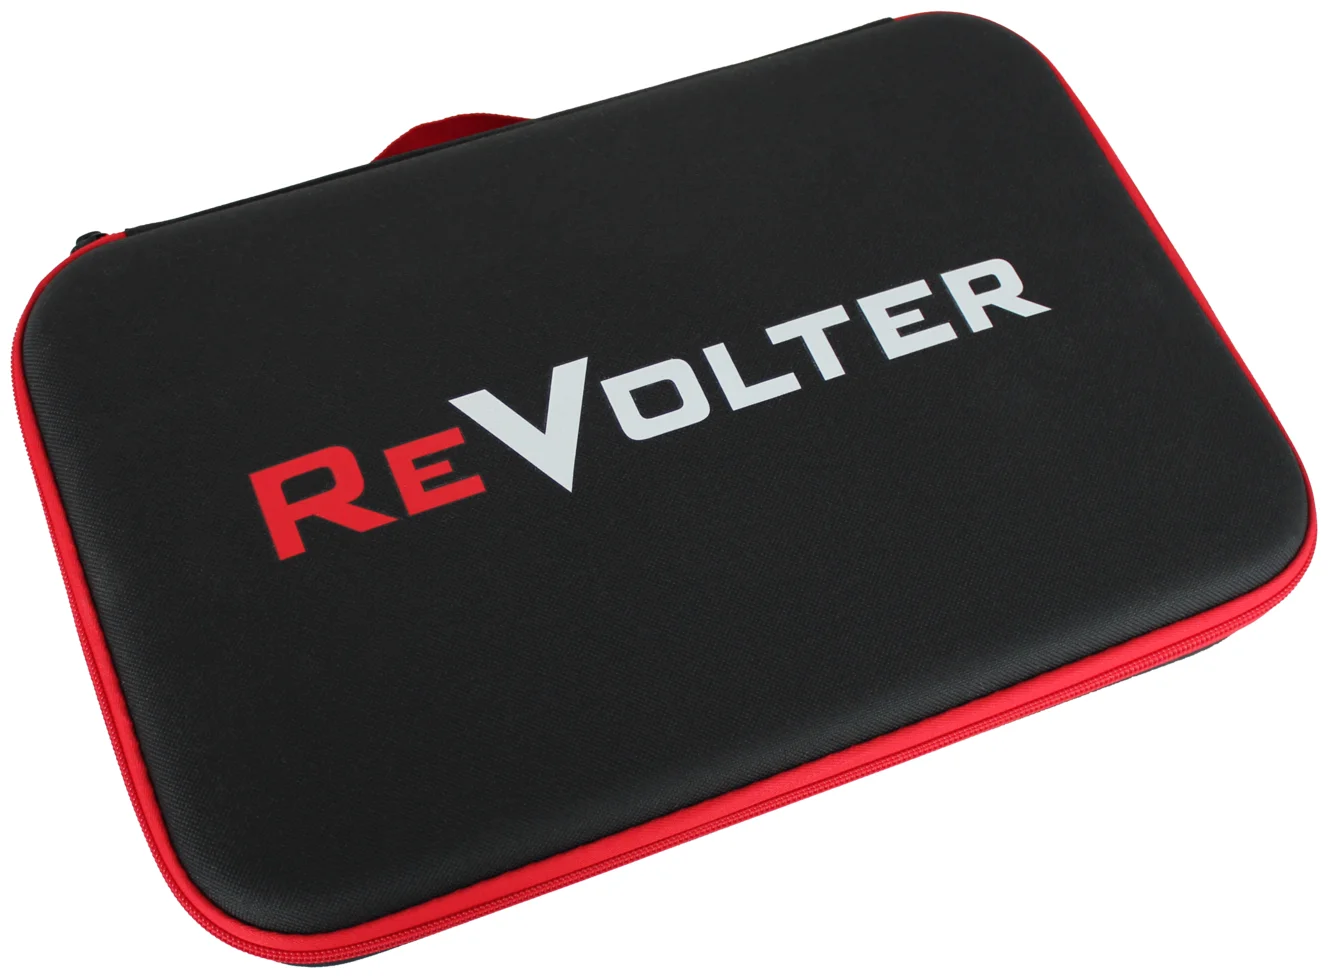 ReVolter Voyage - емкость встроенного аккумулятора 16000 мА·ч